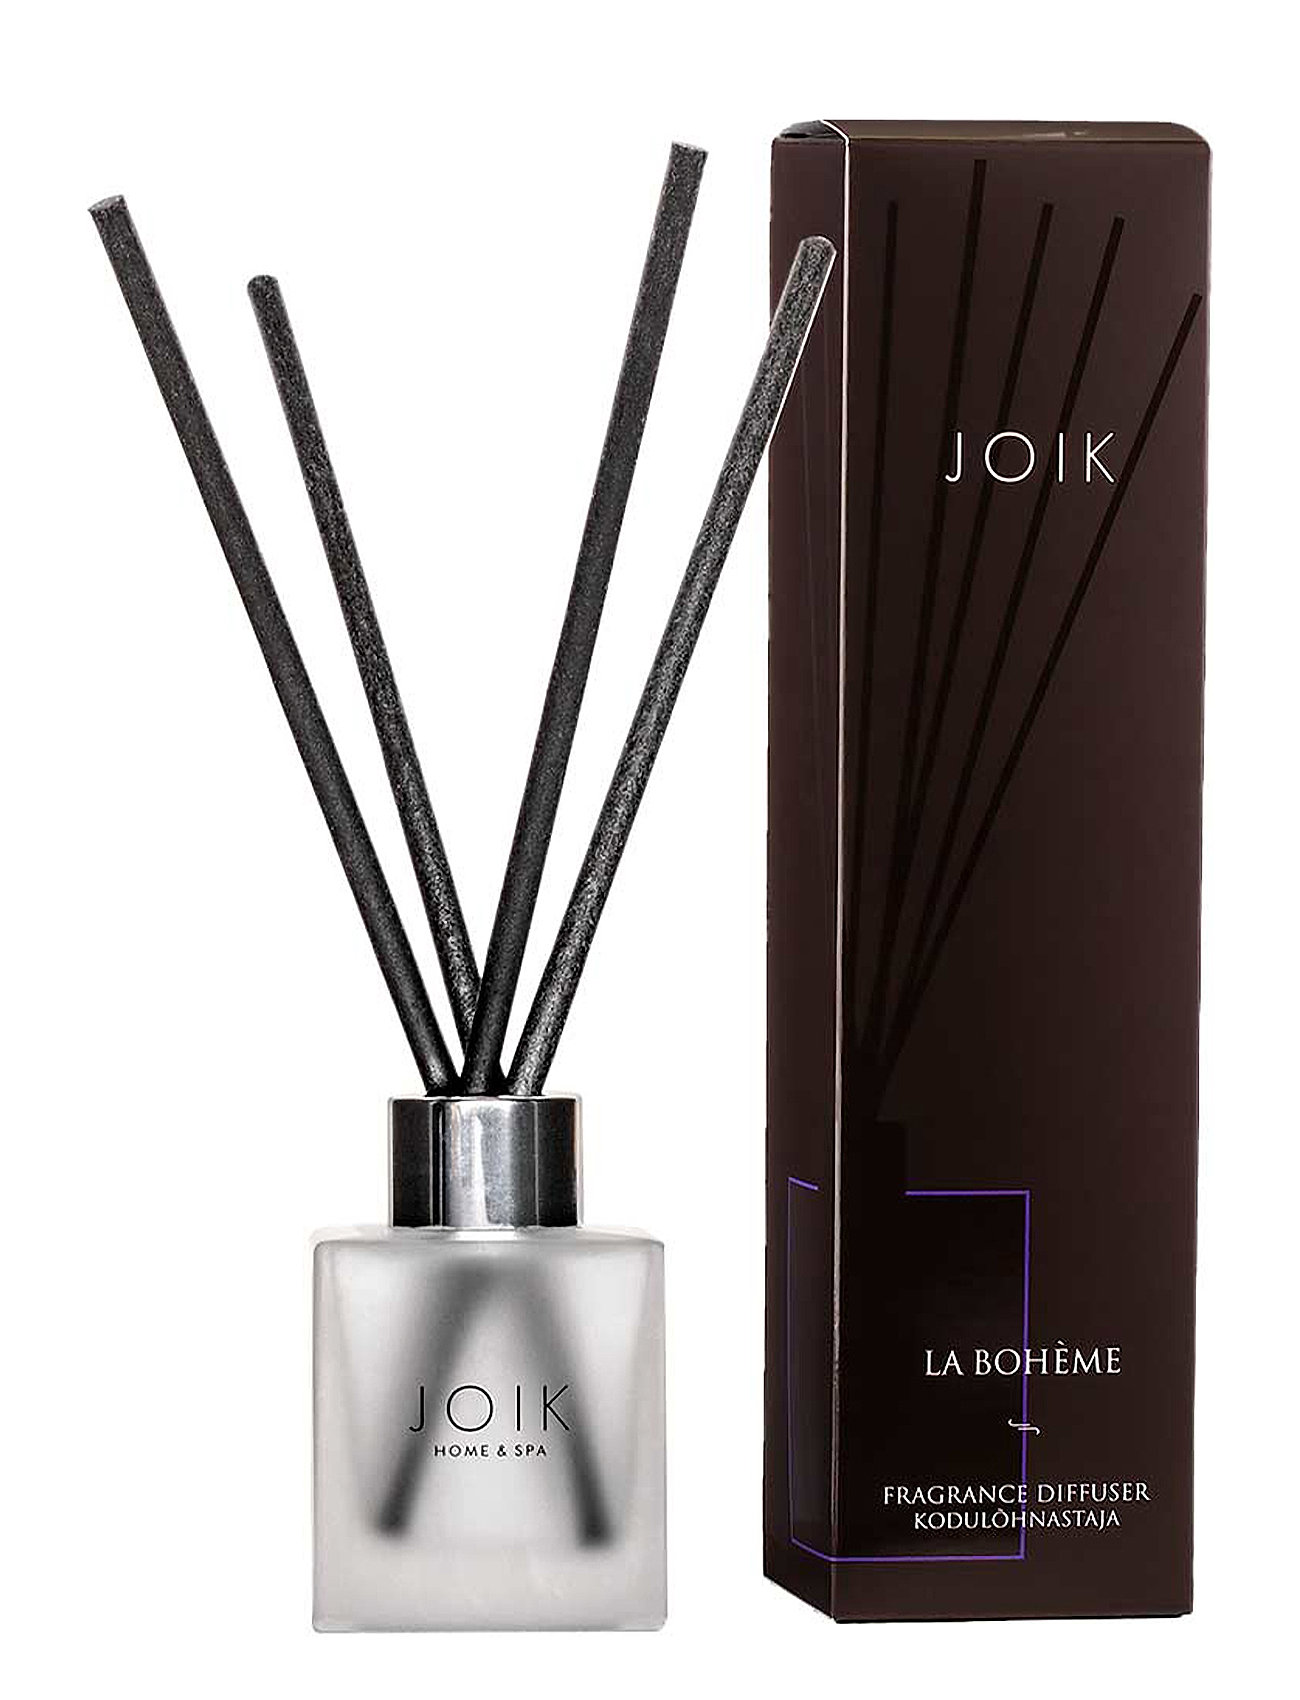 Joik Home & Spa Fragrance Diffuser La Boheme Duftspray Til Hjemmet Nude JOIK